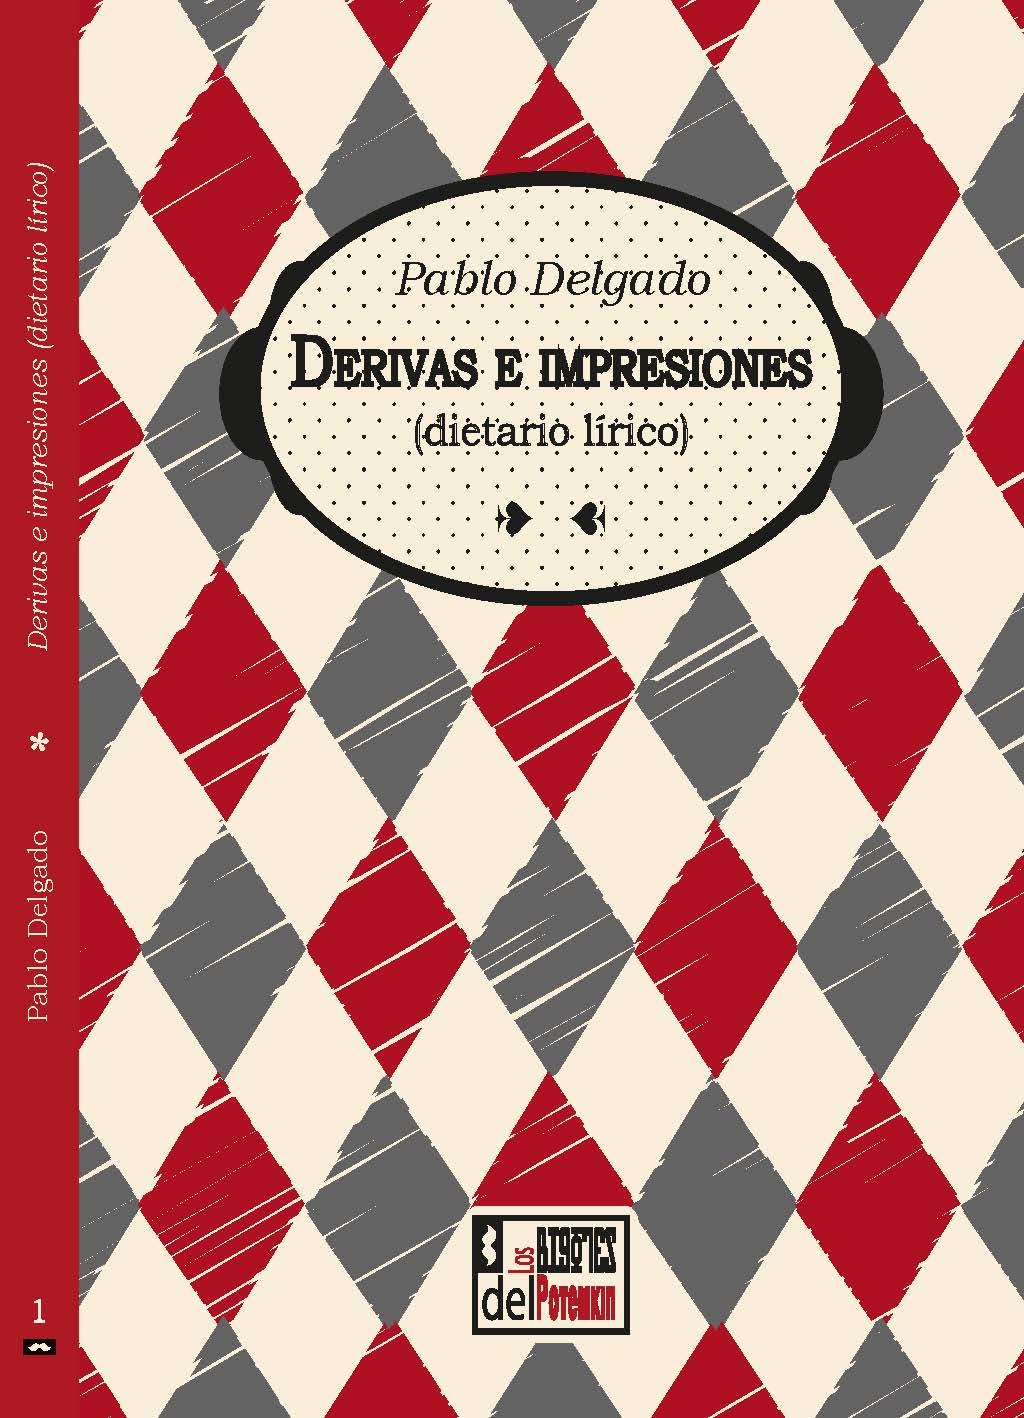 Pablo Delgado: Derivas e impresiones